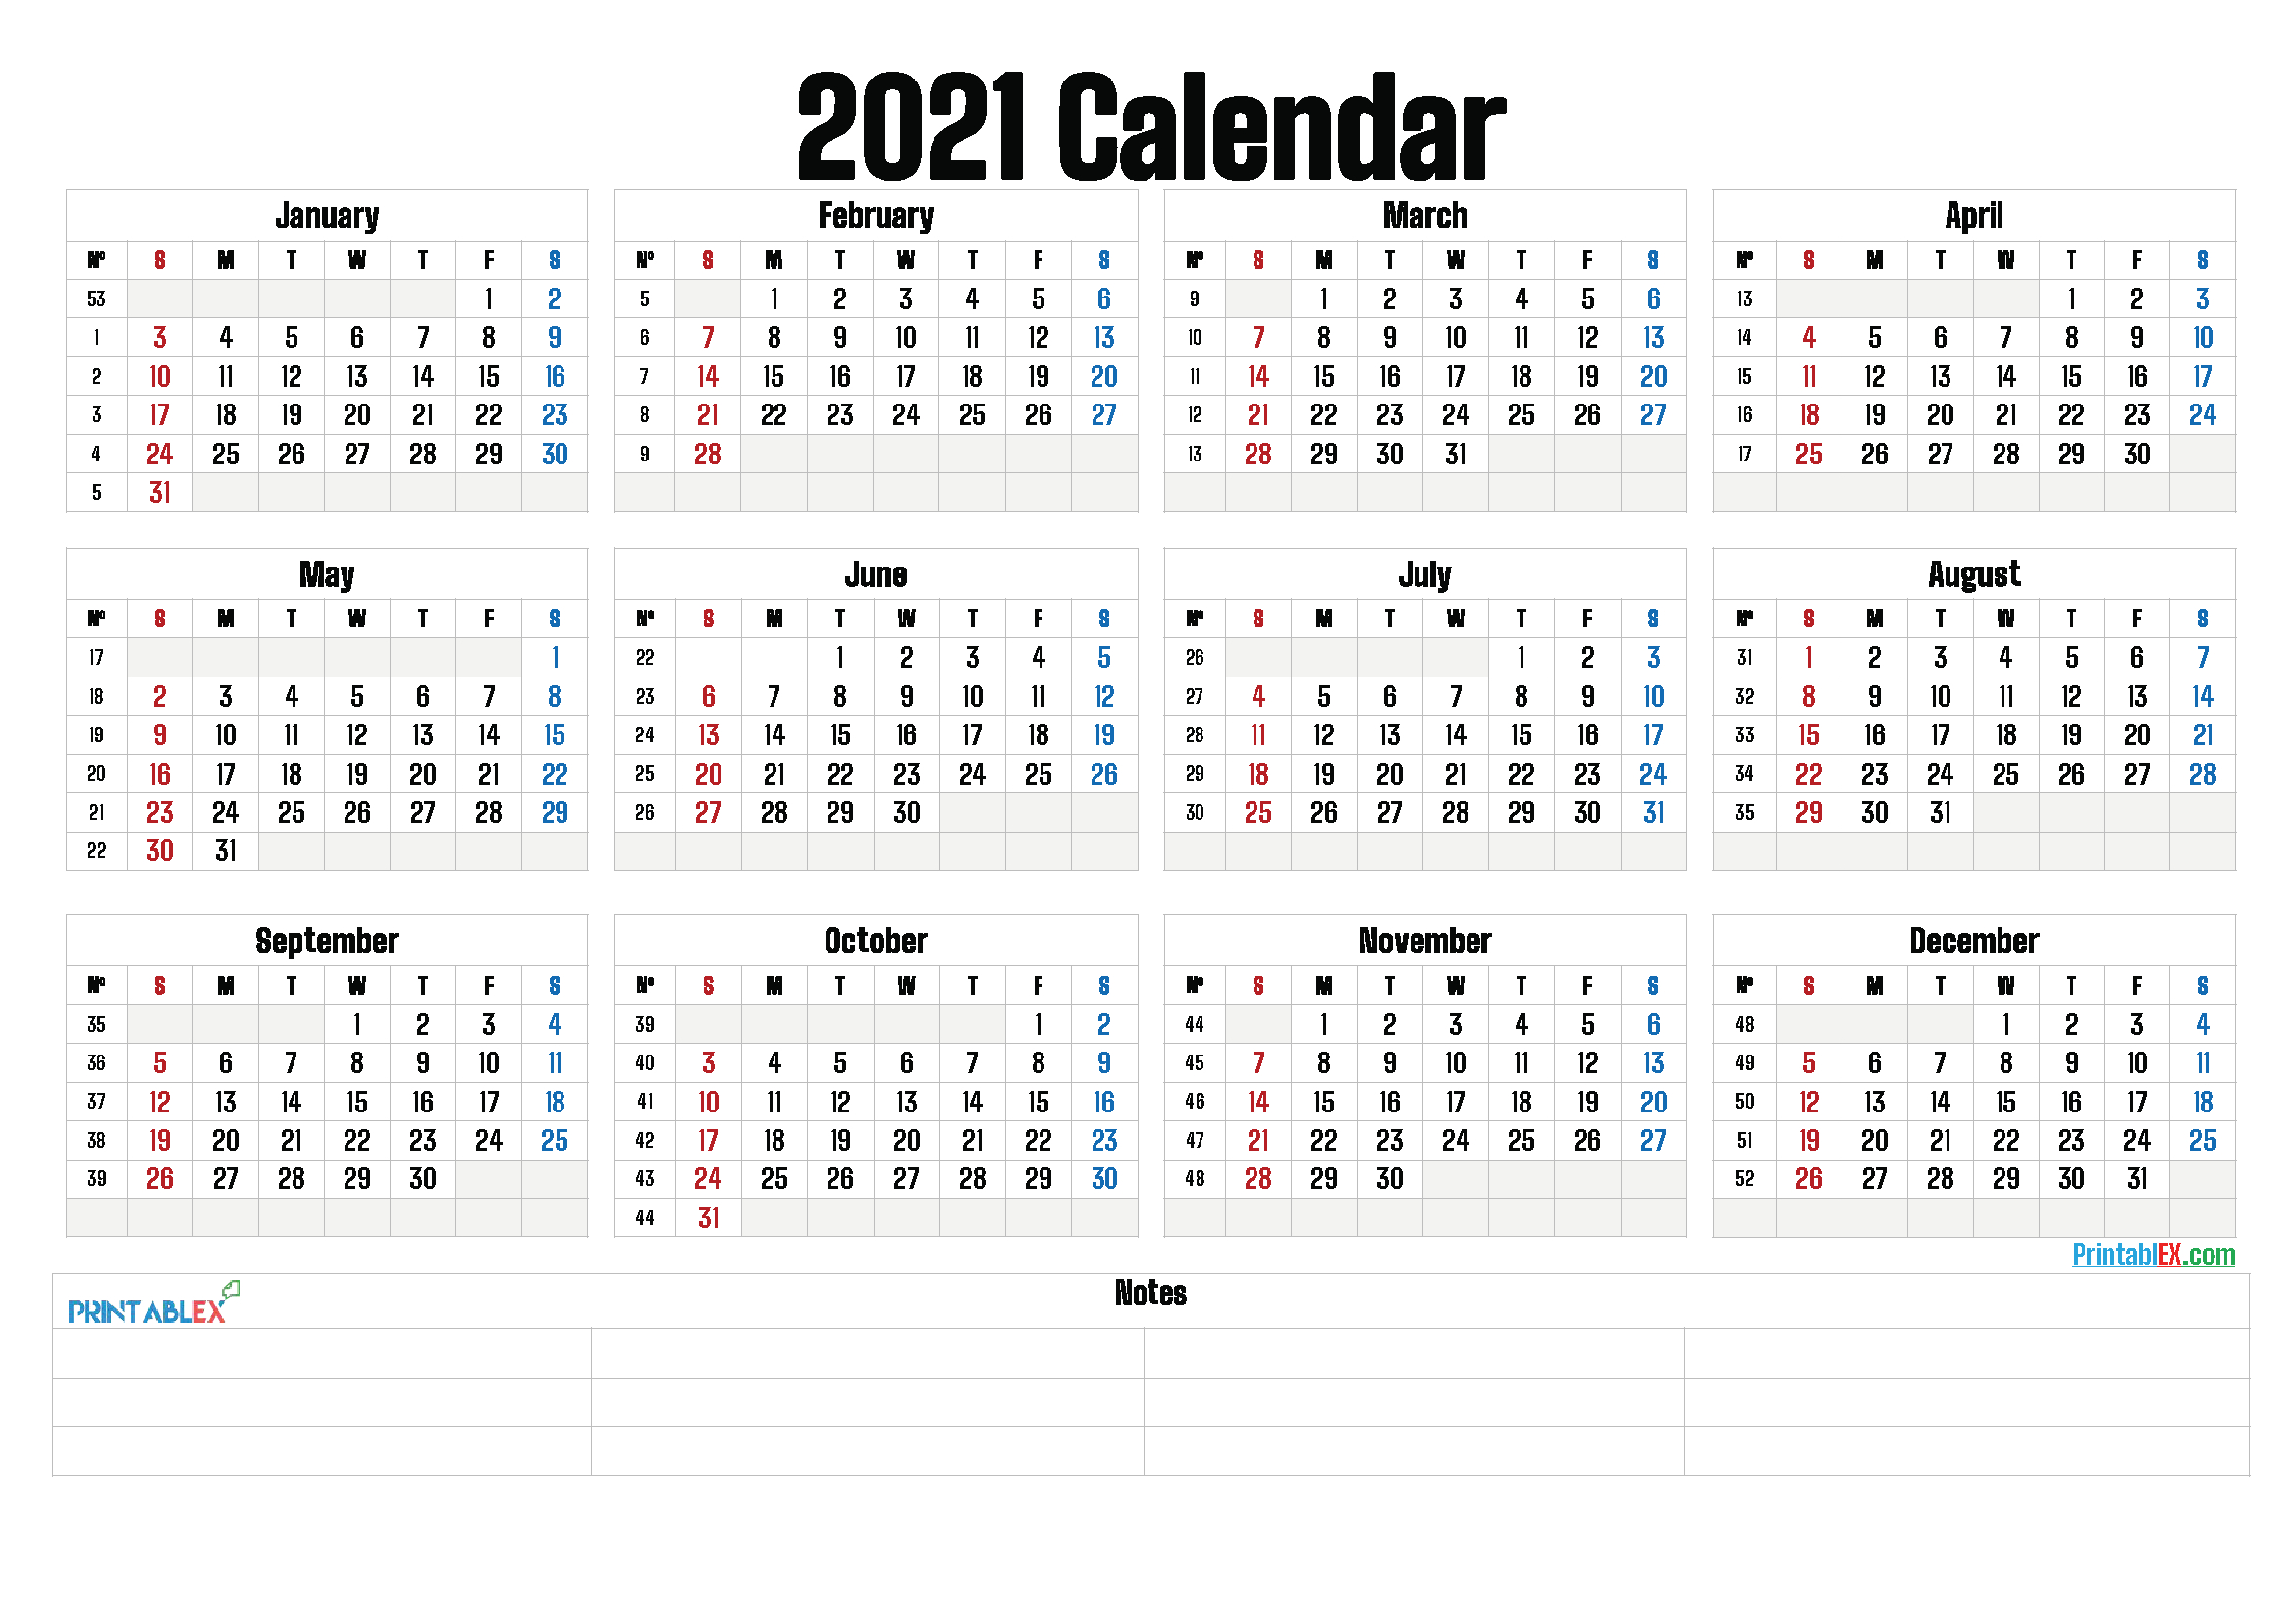 2021 Calendar With Week Number Printable Free - 2021